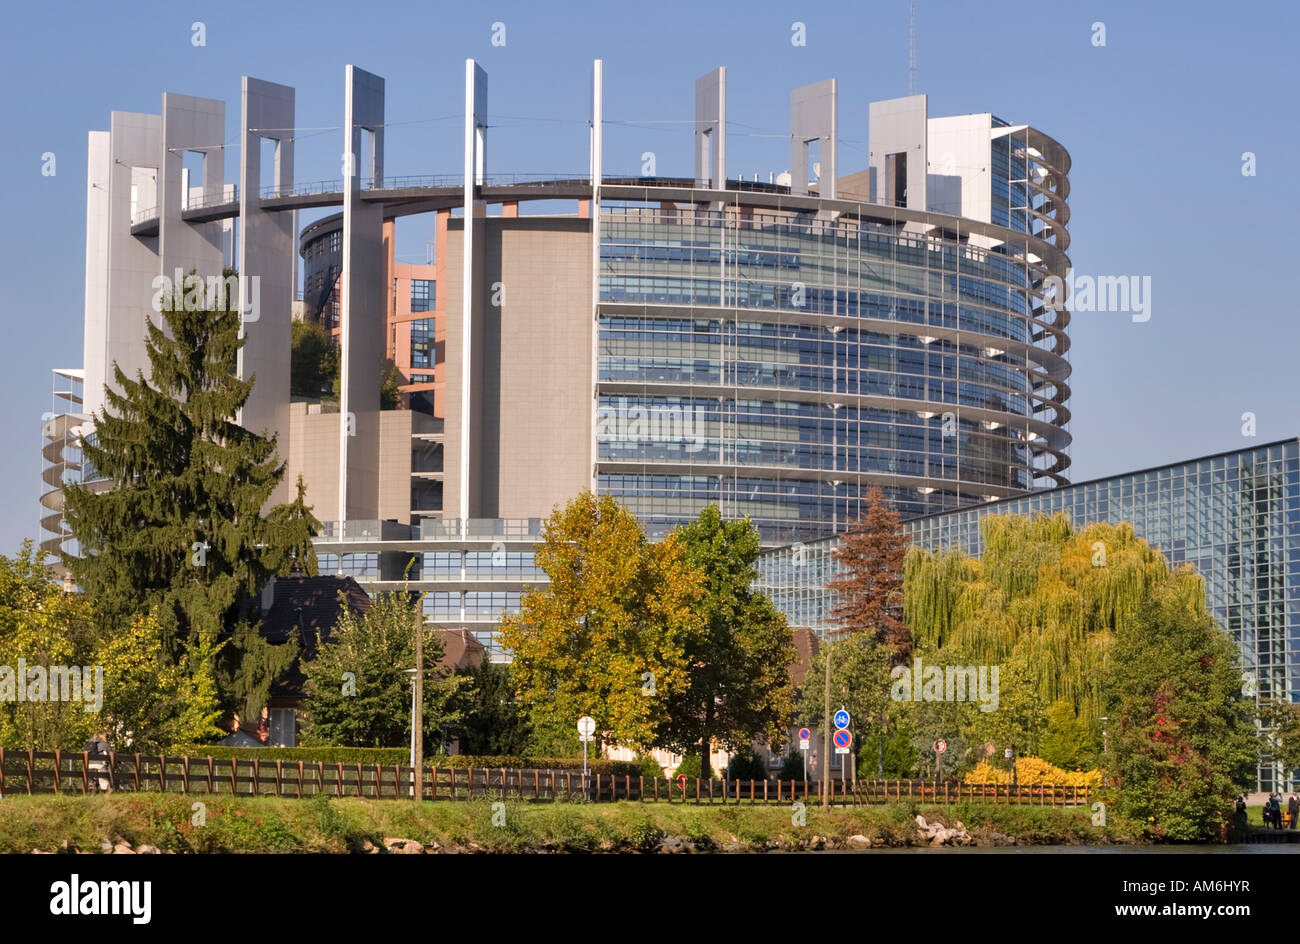 La torre del edificio Louise Weiss del Parlamento Europeo, en Estrasburgo, Francia Foto de stock